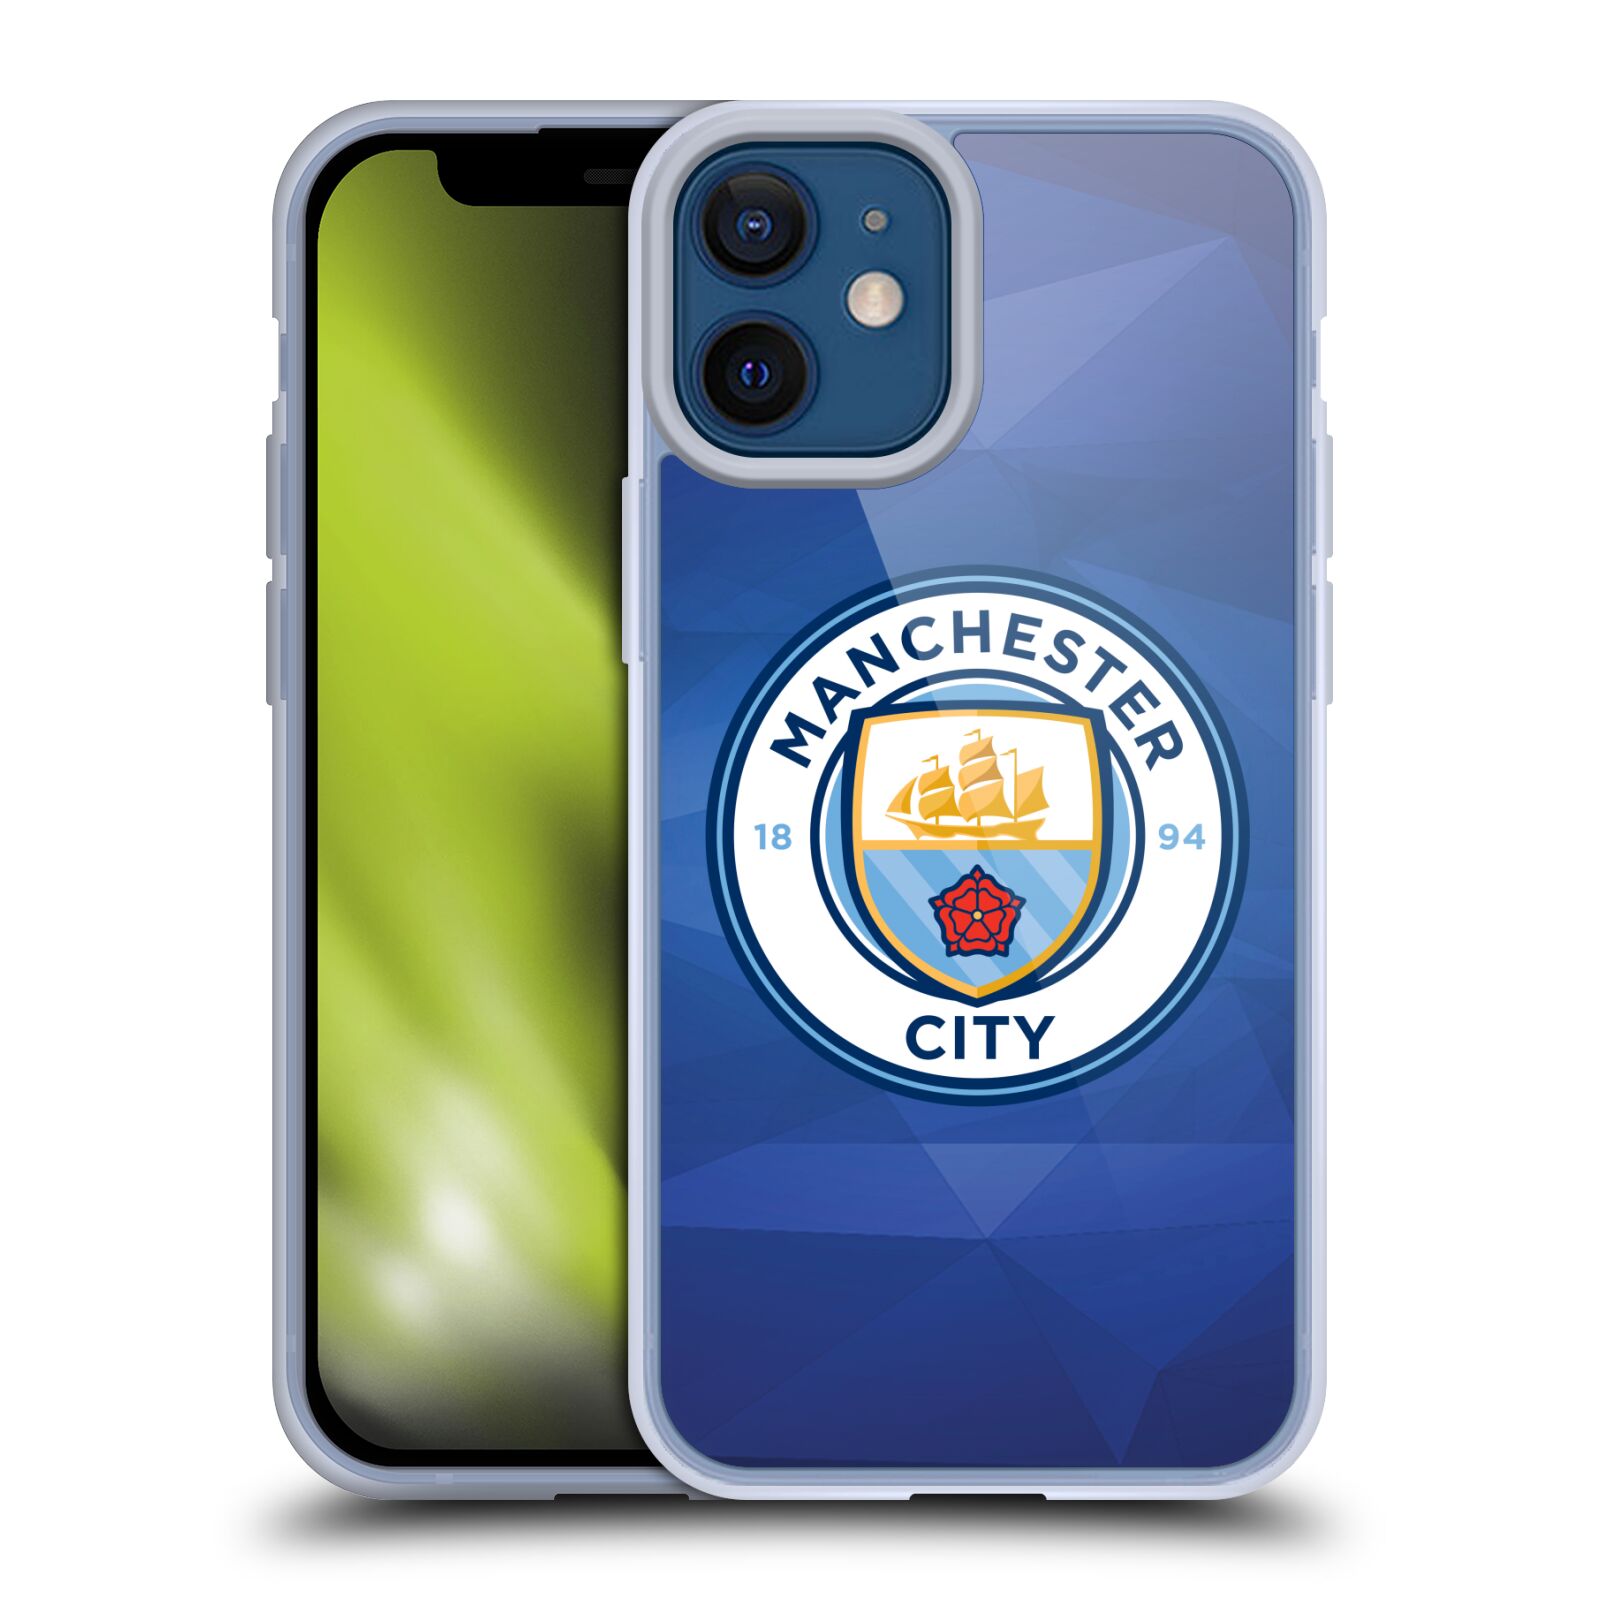 Silikonové pouzdro na mobil Apple iPhone 12 Mini - Head Case - Manchester City FC - Modré nové logo (Silikonový kryt, obal, pouzdro na mobilní telefon Apple iPhone 12 Mini (5,4") s motivem Manchester City FC - Modré nové logo)